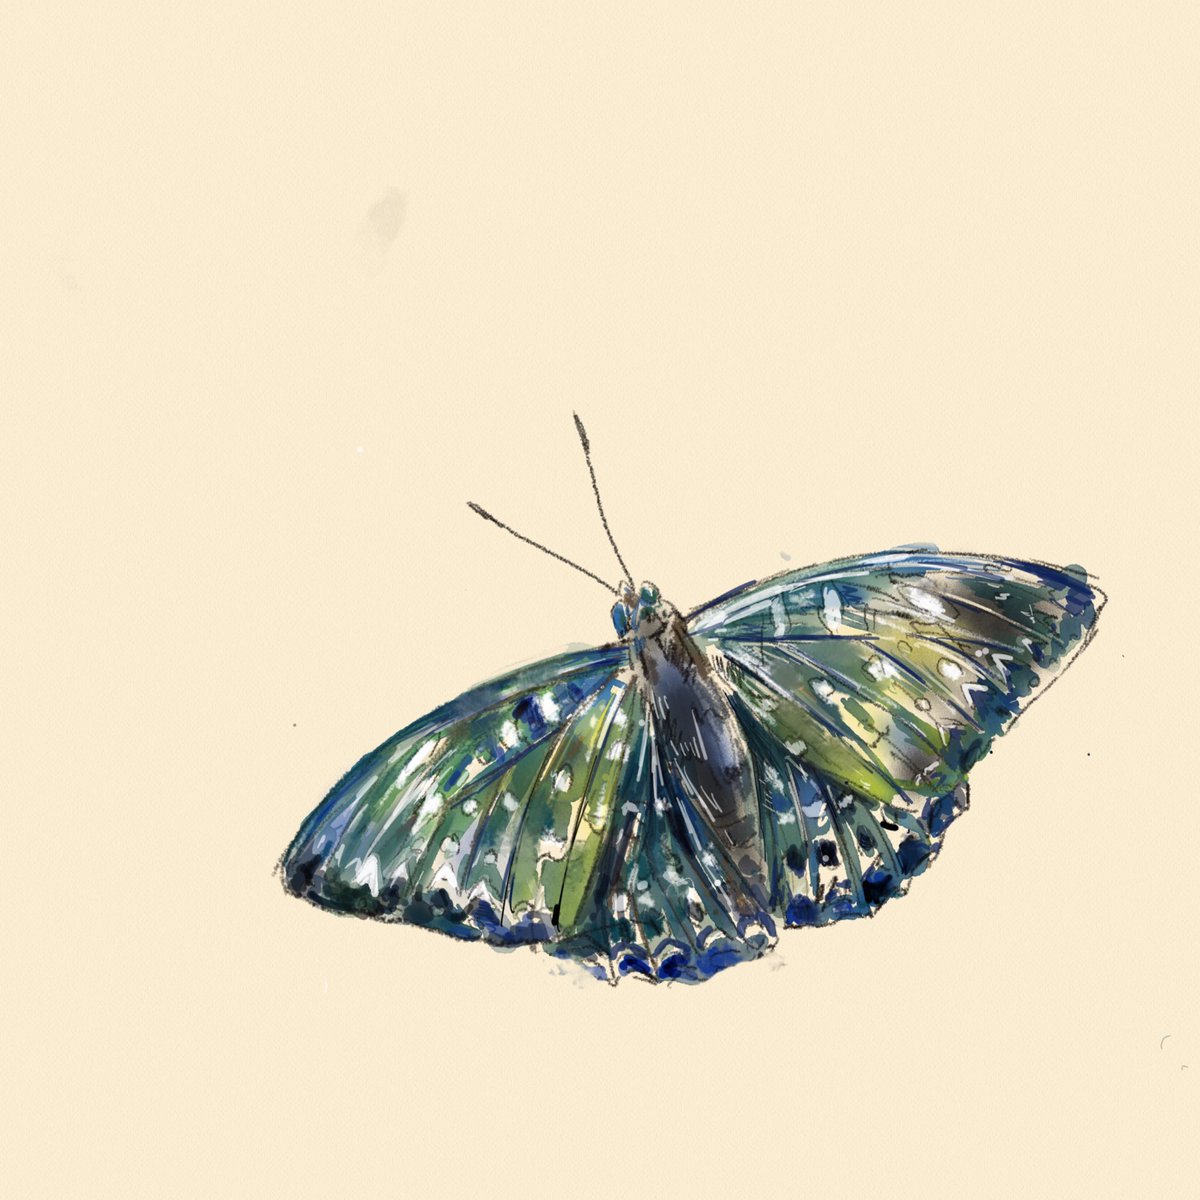 「昆虫を描きました🐞。 」|じゅえき太郎のイラスト